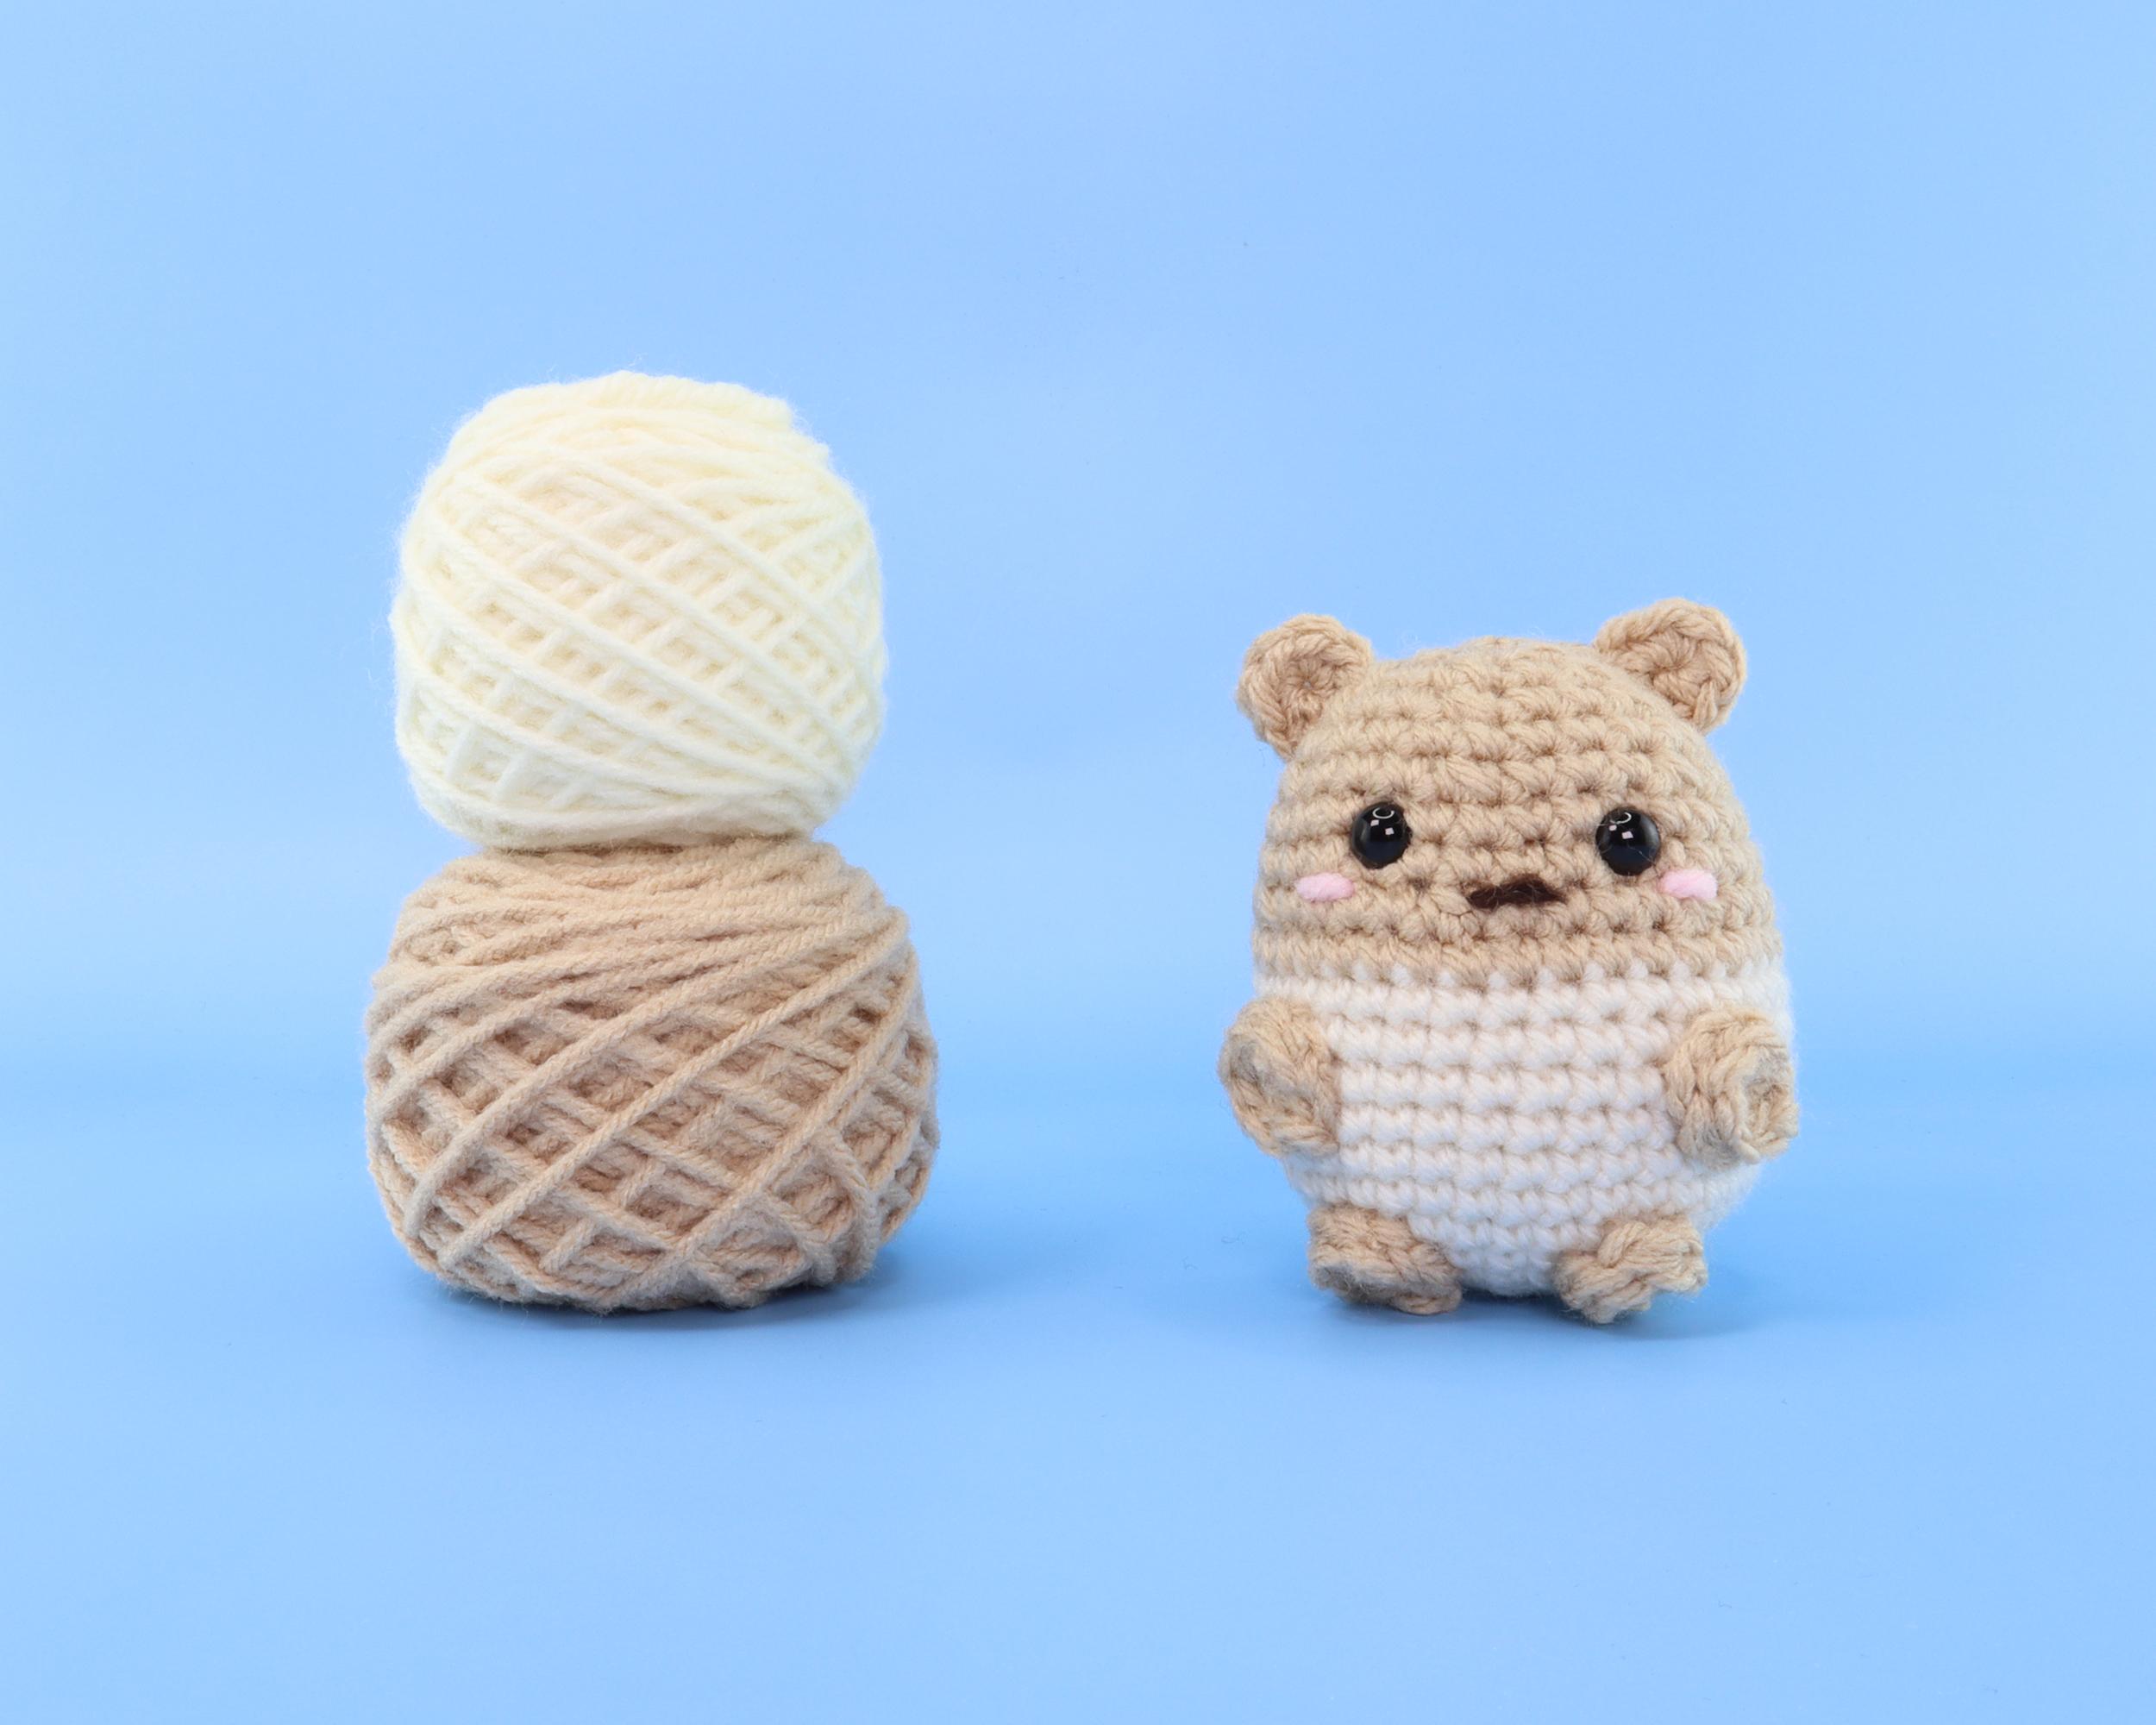 Cashew The Hamster Crochet Kit